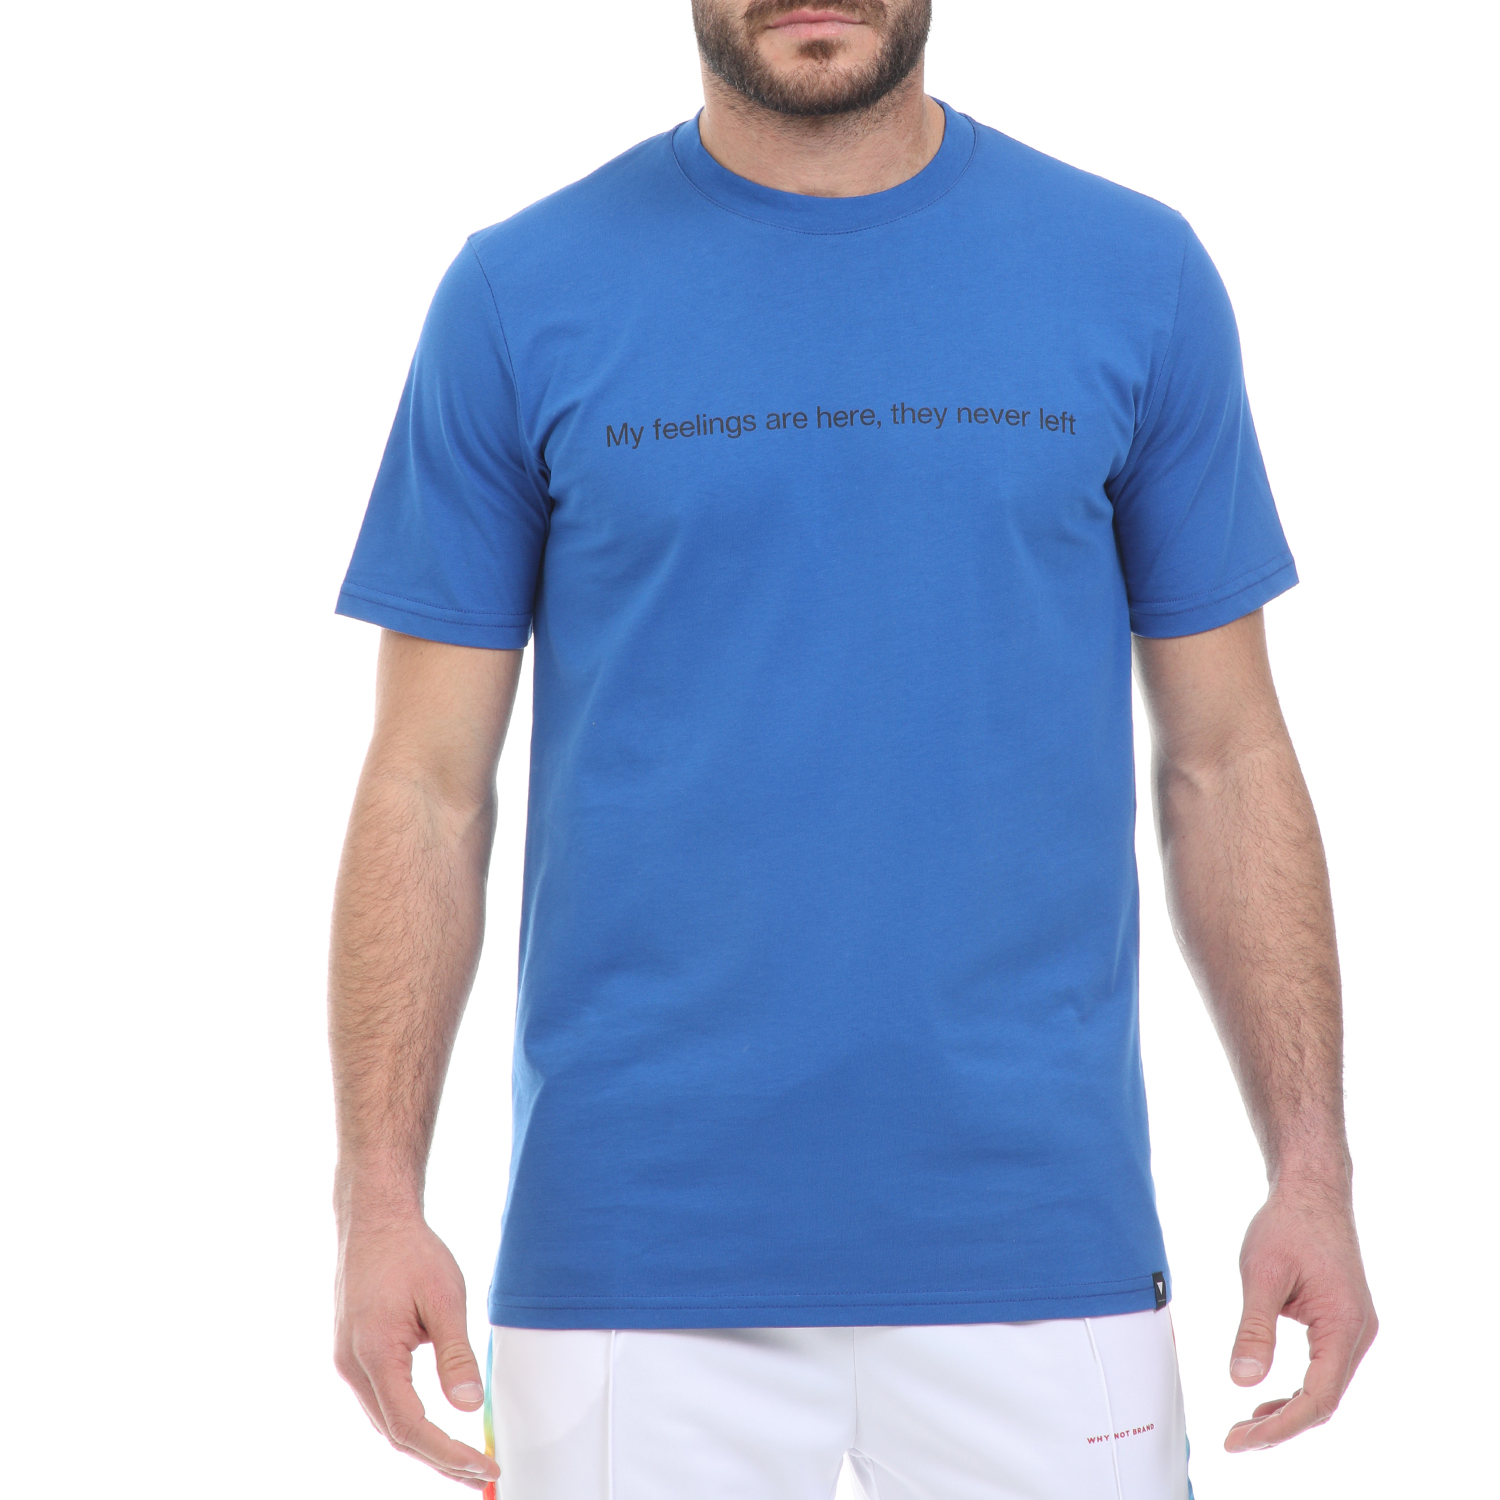 Ανδρικά/Ρούχα/Μπλούζες/Κοντομάνικες WHY NOT - Ανδρικό t-shirt WHY NOT TEE FEELINGS μπλε